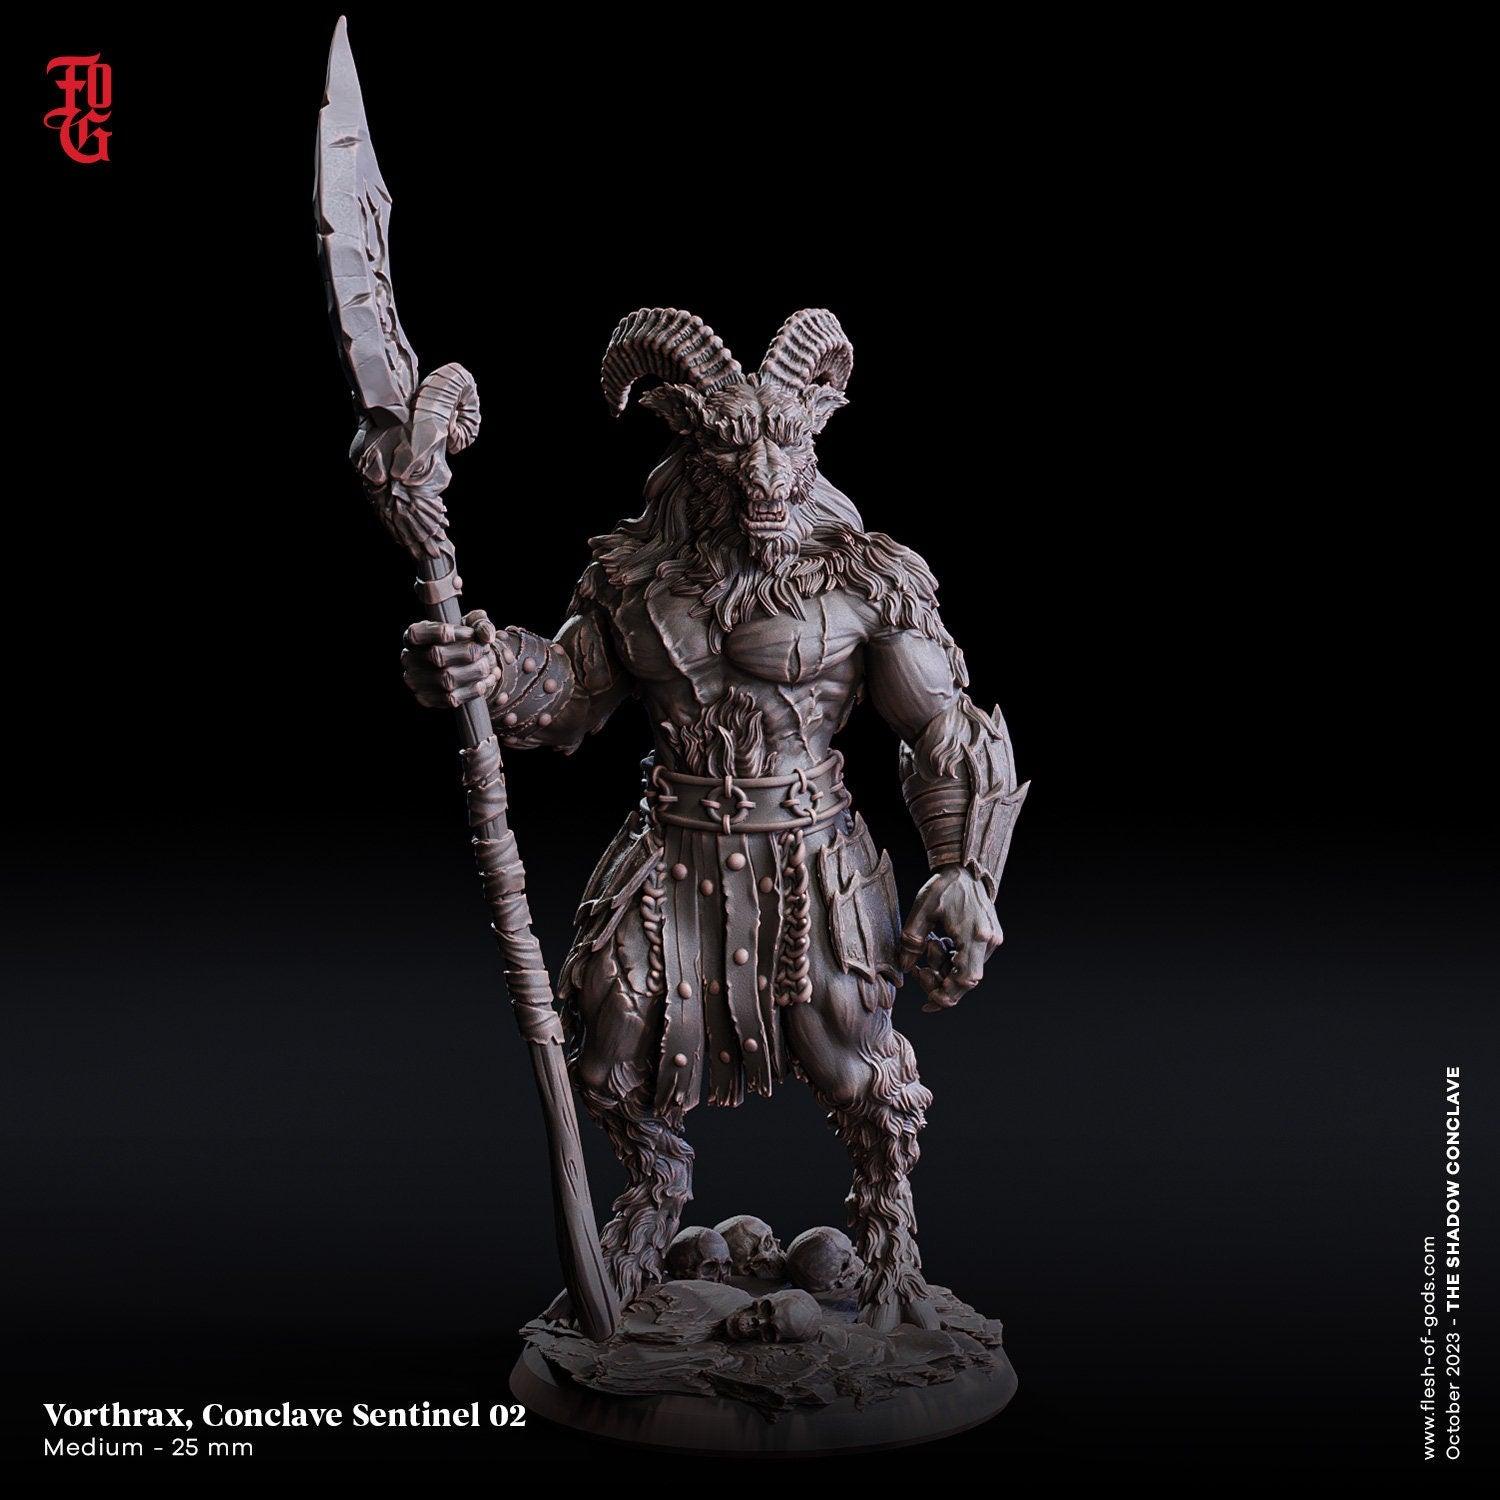 Conclave Sentinel DnD Fiend Miniature | Demon Monster Miniature | 32mm Scale - Plague Miniatures shop for DnD Miniatures